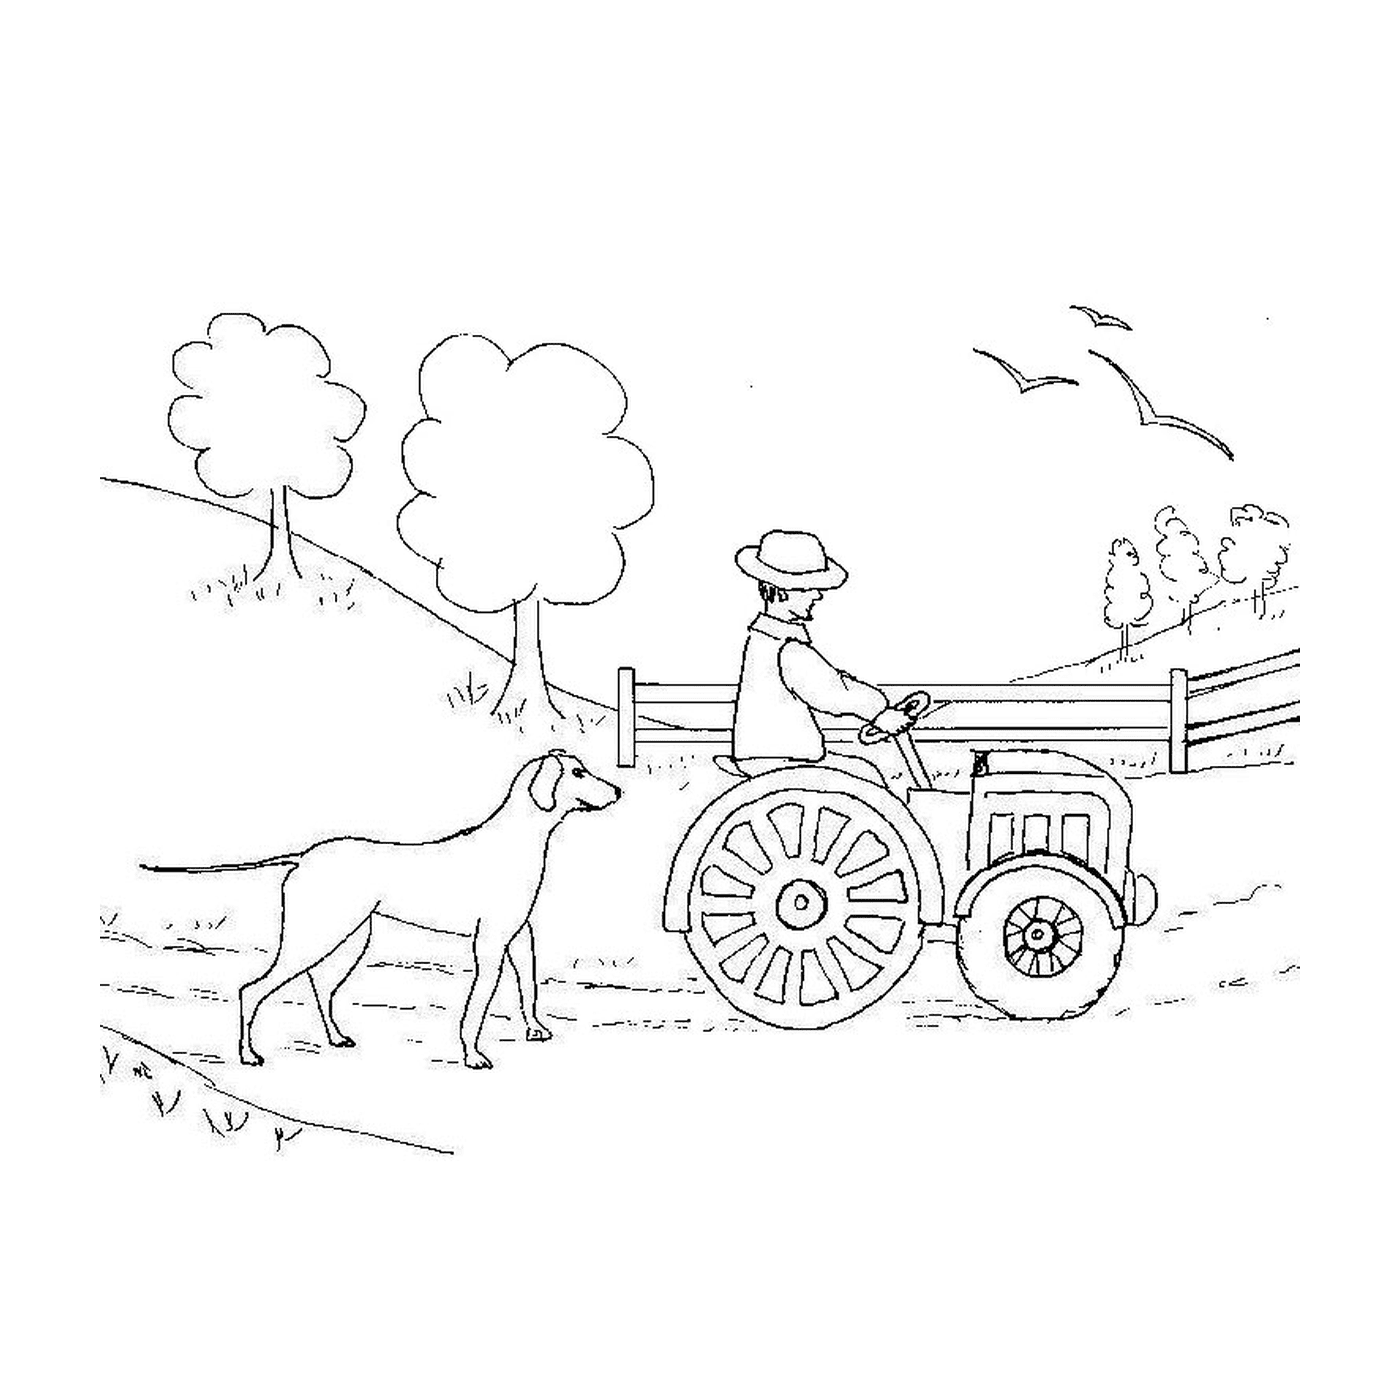  Возглавляемая человеком тракторная ферма 